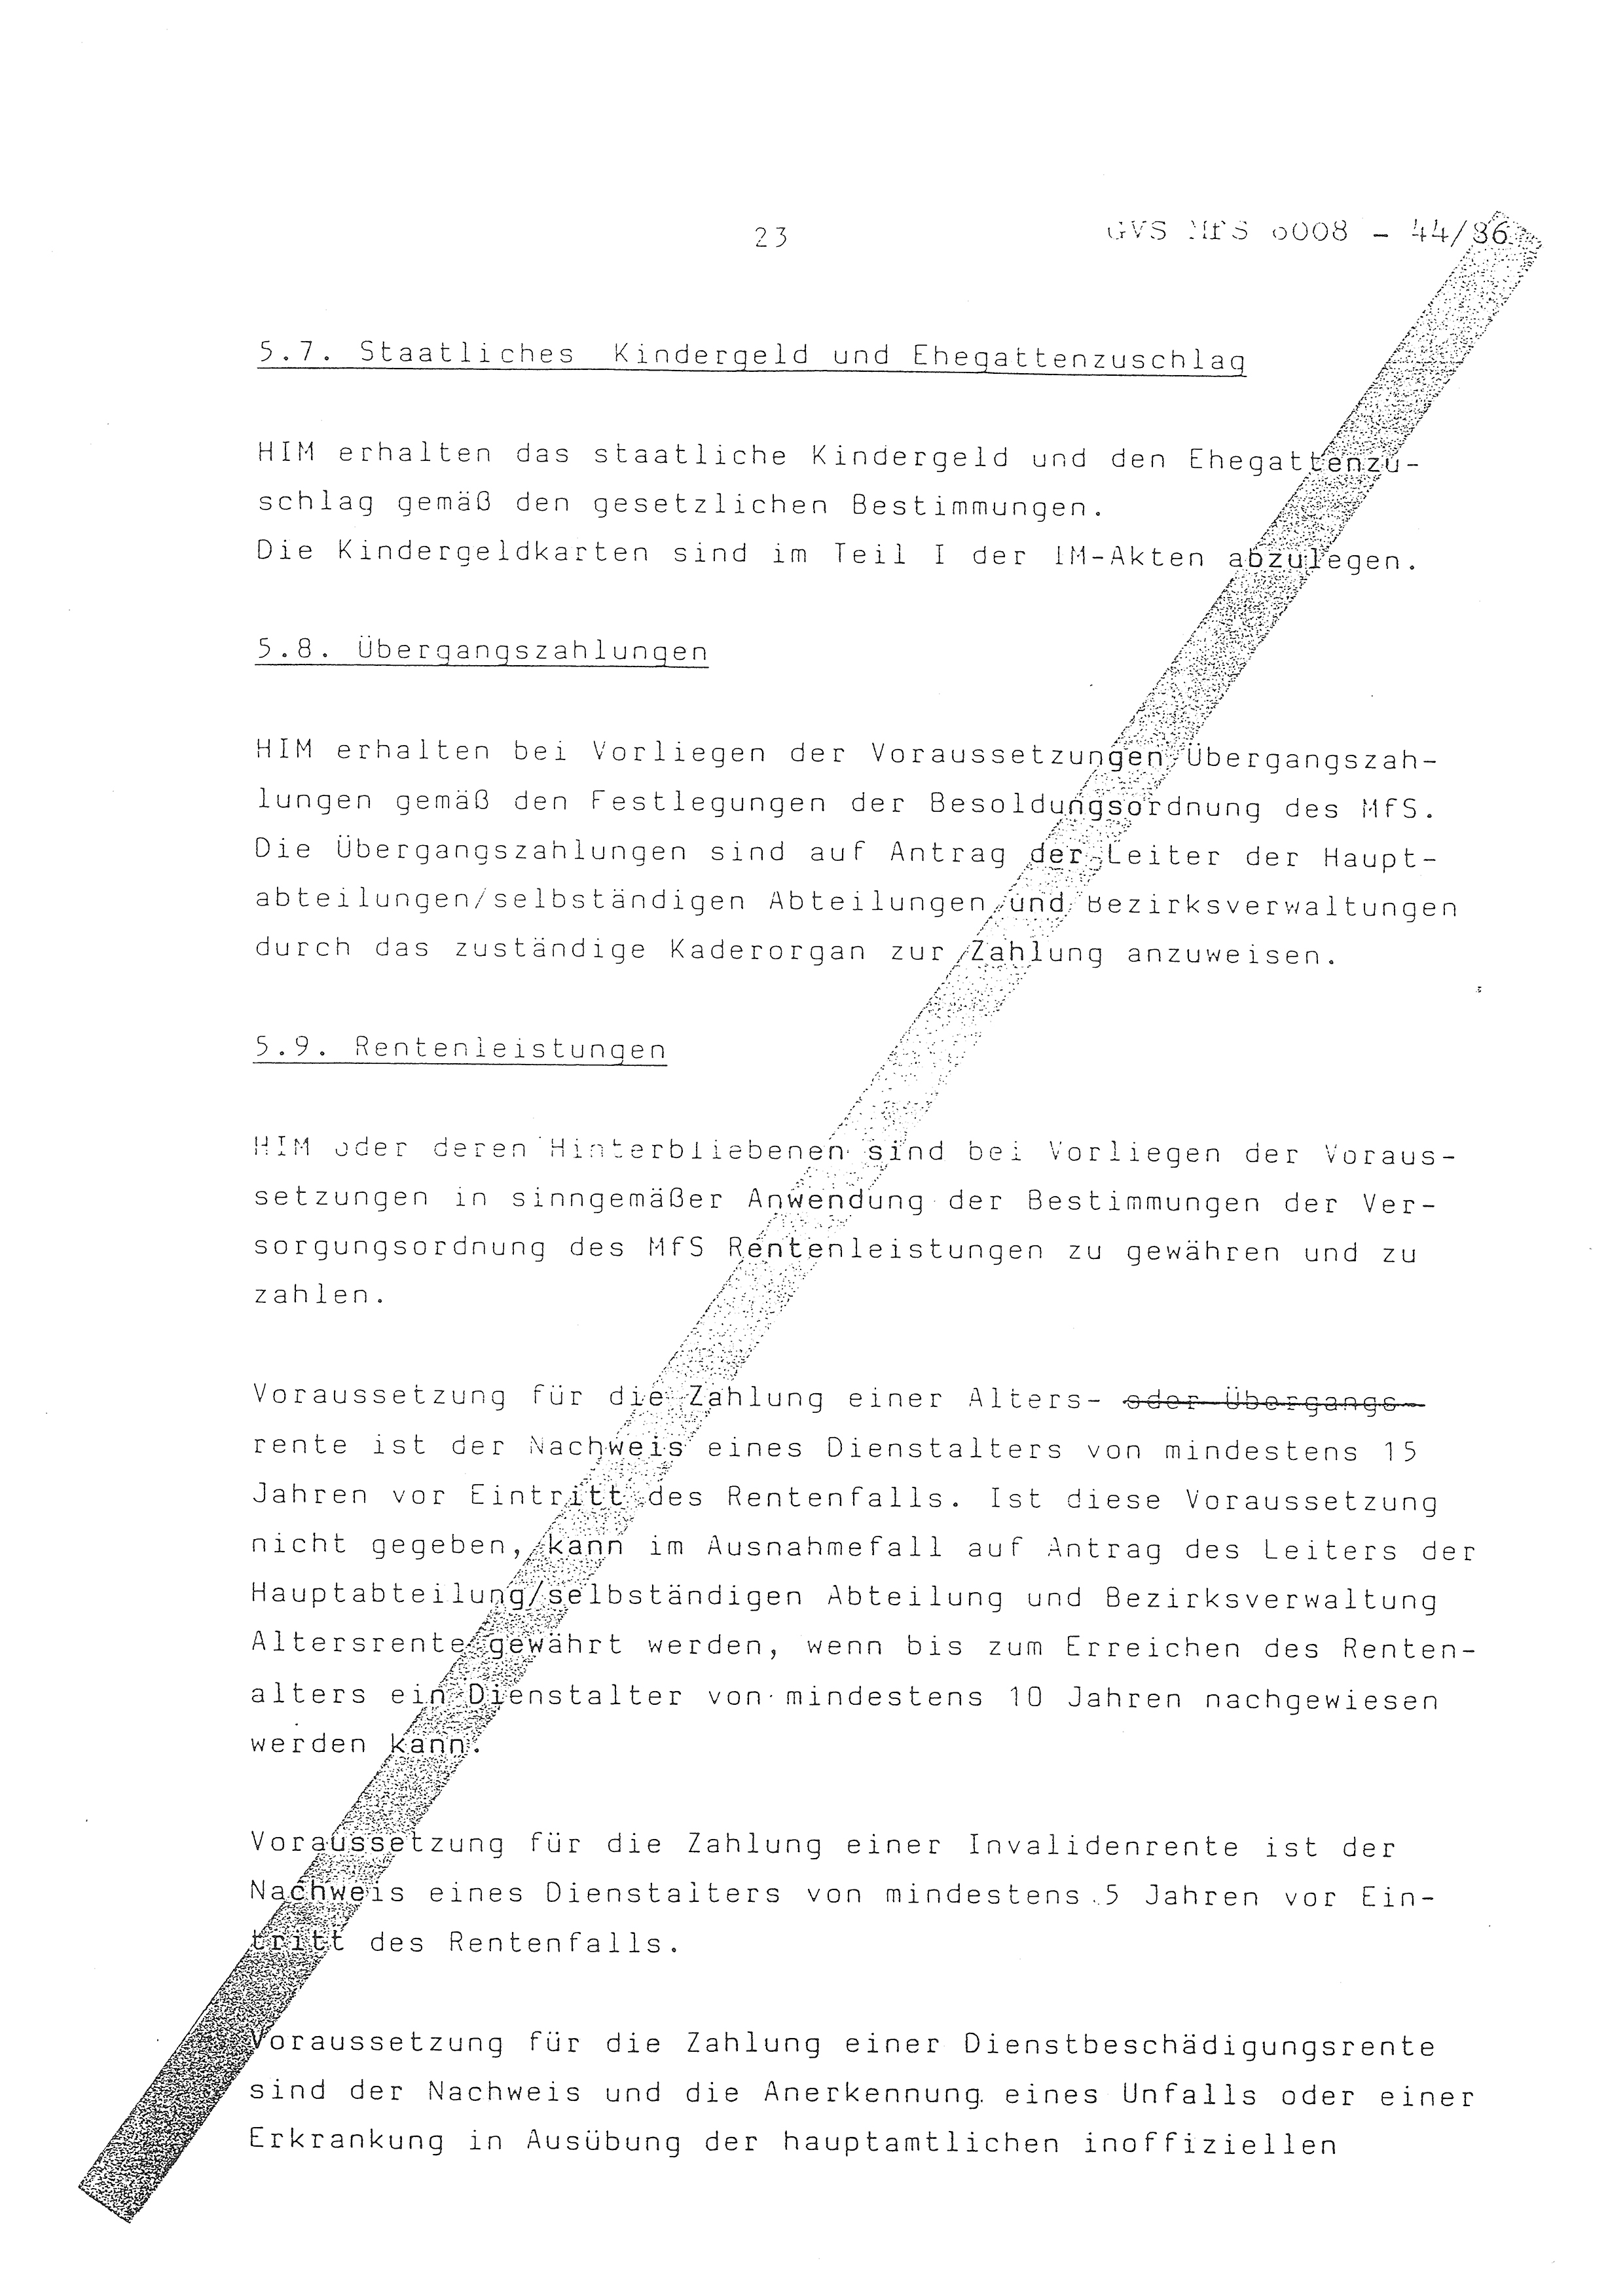 2. Durchführungsbestimmung zur Richtlinie 1/79 über die Arbeit mit hauptamtlichen Mitarbeitern des MfS (HIM), Deutsche Demokratische Republik (DDR), Ministerium für Staatssicherheit (MfS), Der Minister (Mielke), Geheime Verschlußsache (GVS) ooo8-44/86, Berlin 1986, Seite 23 (2. DB RL 1/79 DDR MfS Min. GVS ooo8-44/86 1986, S. 23)